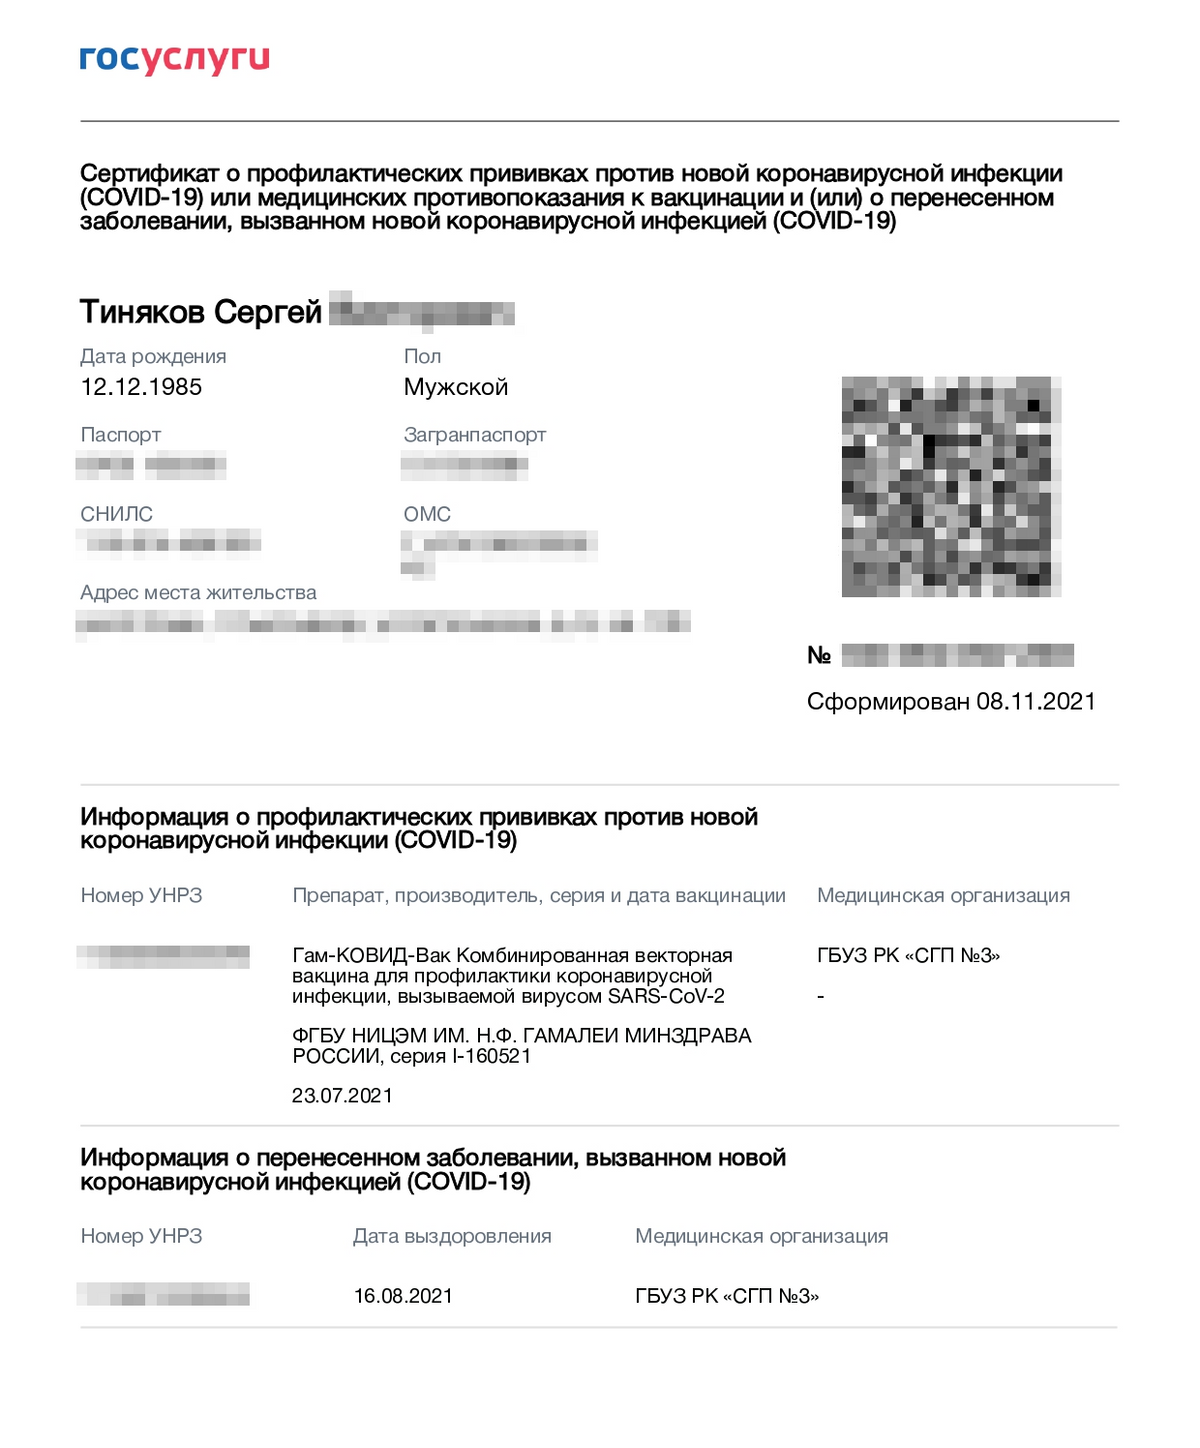 В ноябре форма сертификата изменилась, теперь в нем указывают данные не только о перенесенном коронавирусе, но и о вакцинации